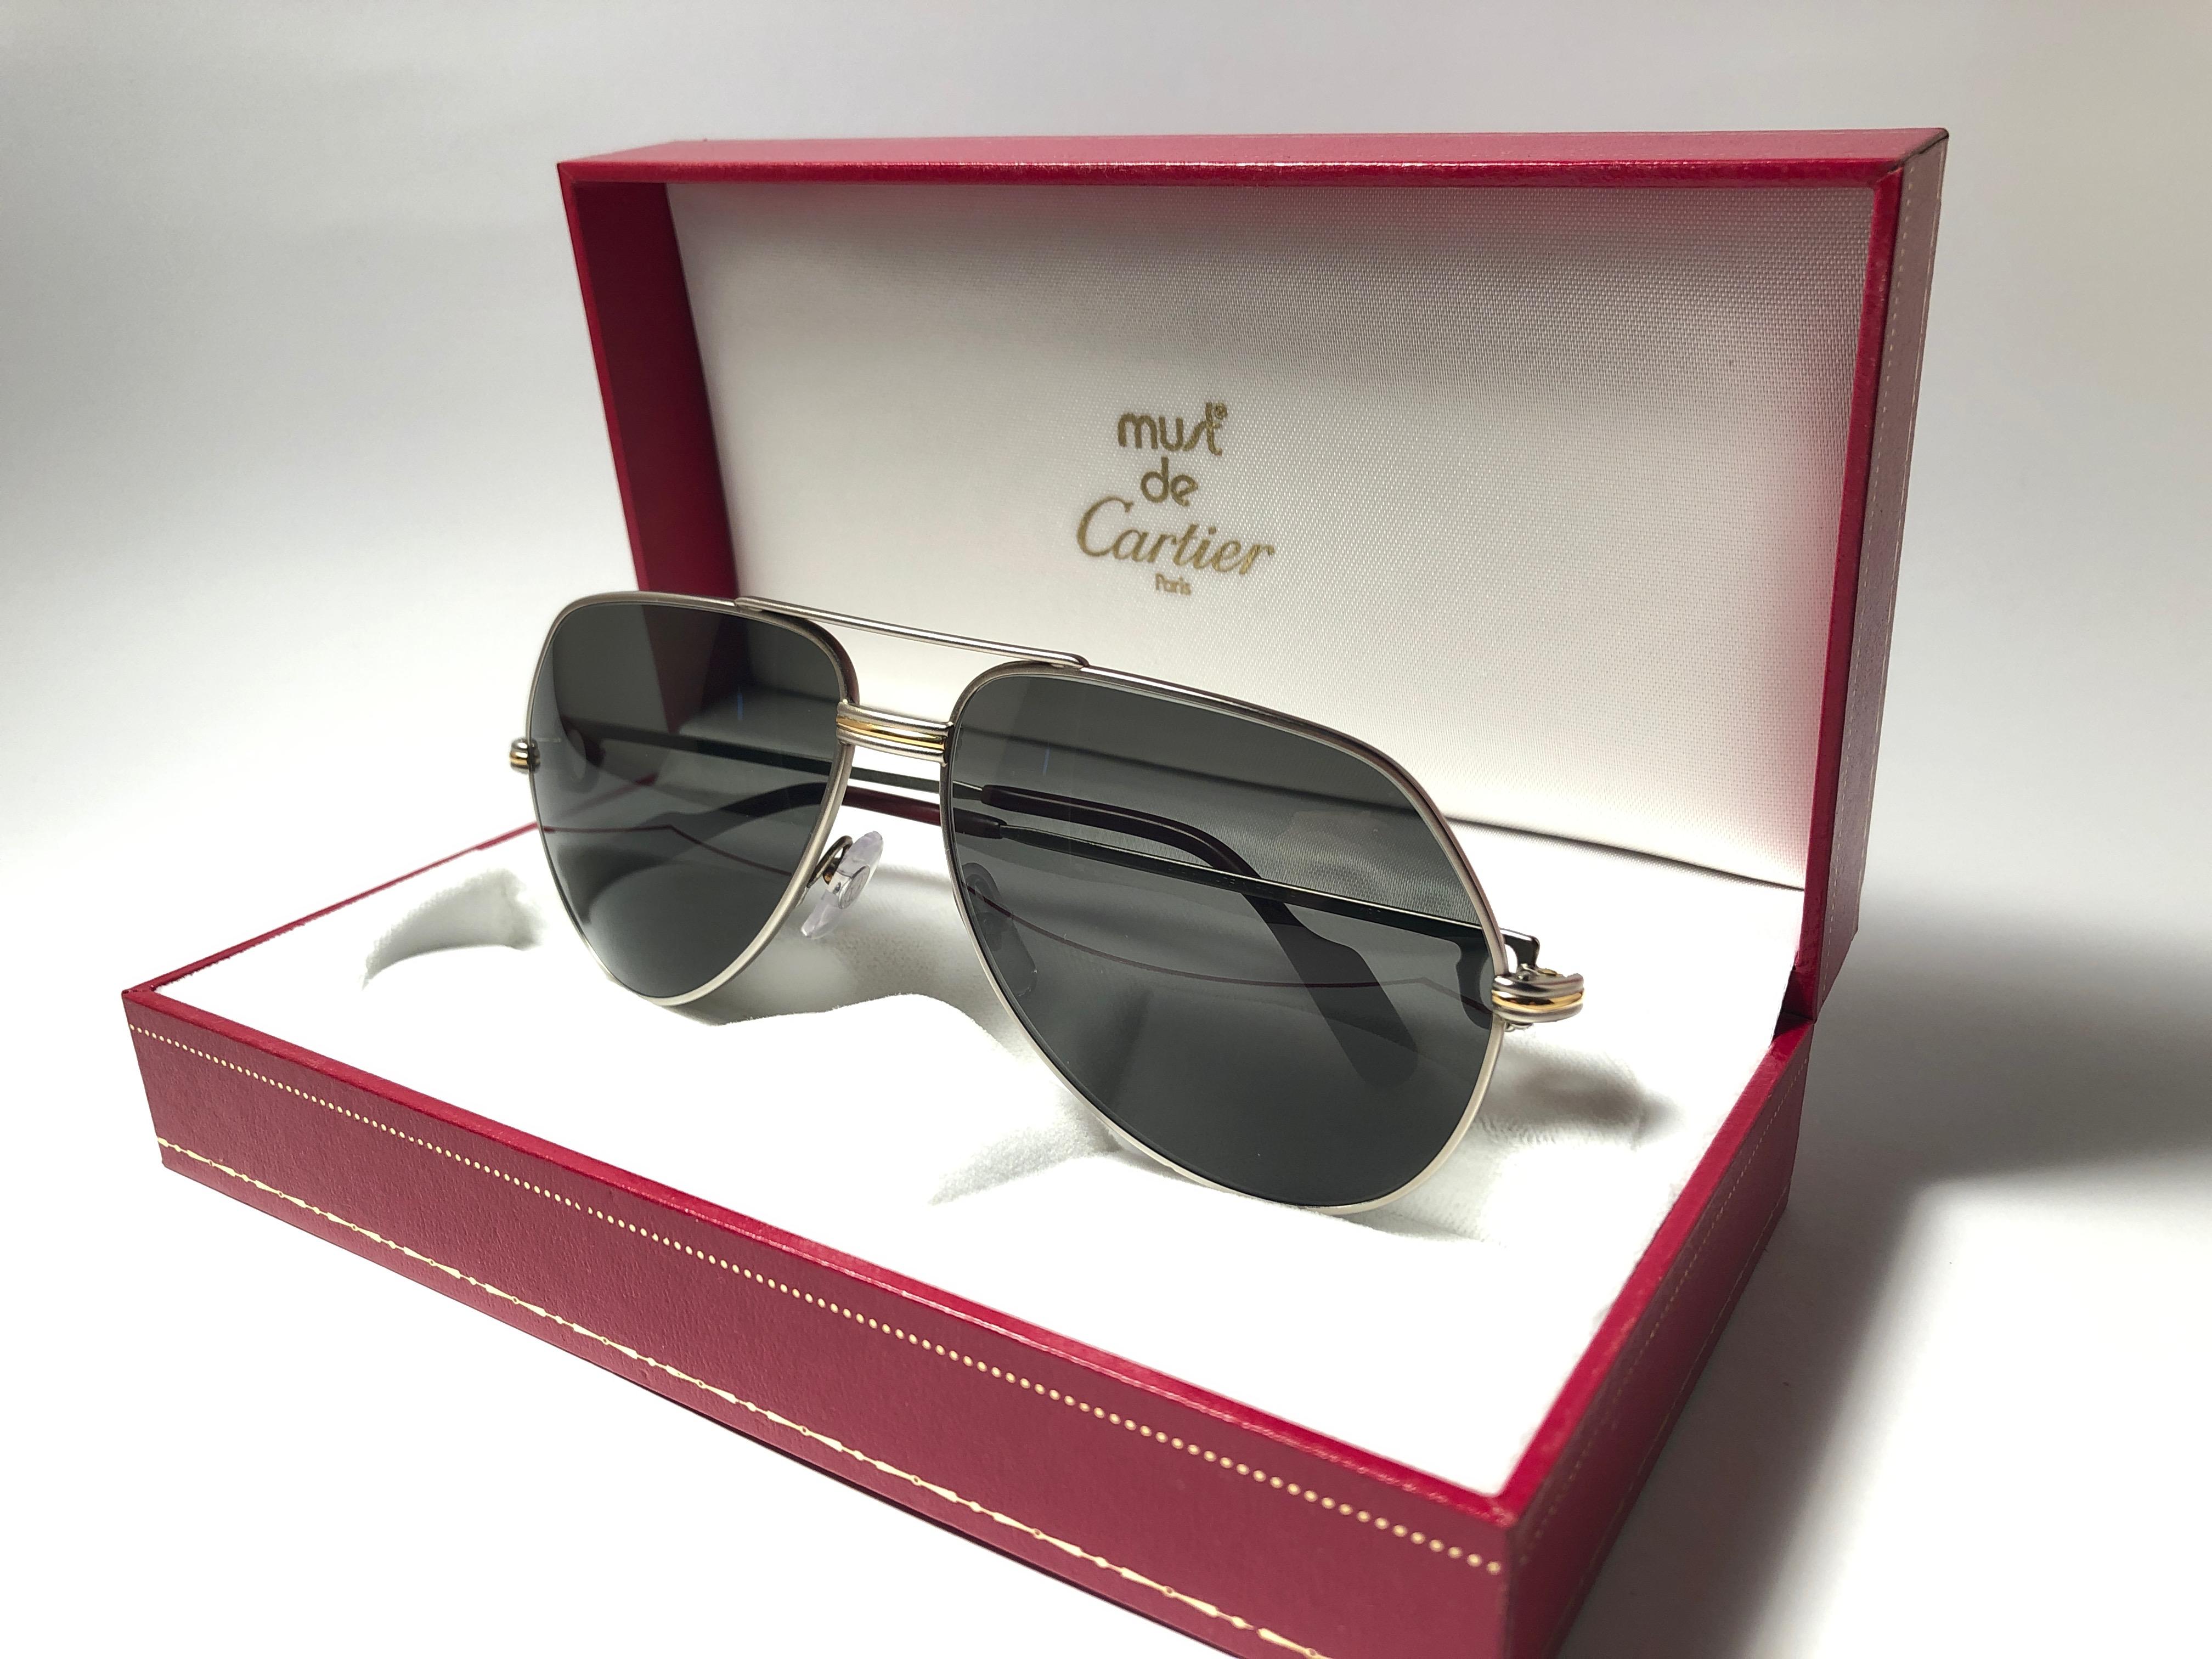 Vintage Cartier Aviator Vendome 62MM Titan-Sonnenbrille mit grauen (uv-Schutz) Gläsern.  Der Rahmen ist mit den berühmten Vendome-Streifen auf der Vorderseite und den Seiten in Gelb- und Weißgold versehen. 
Alle Markenzeichen. 
Rote Emaille mit